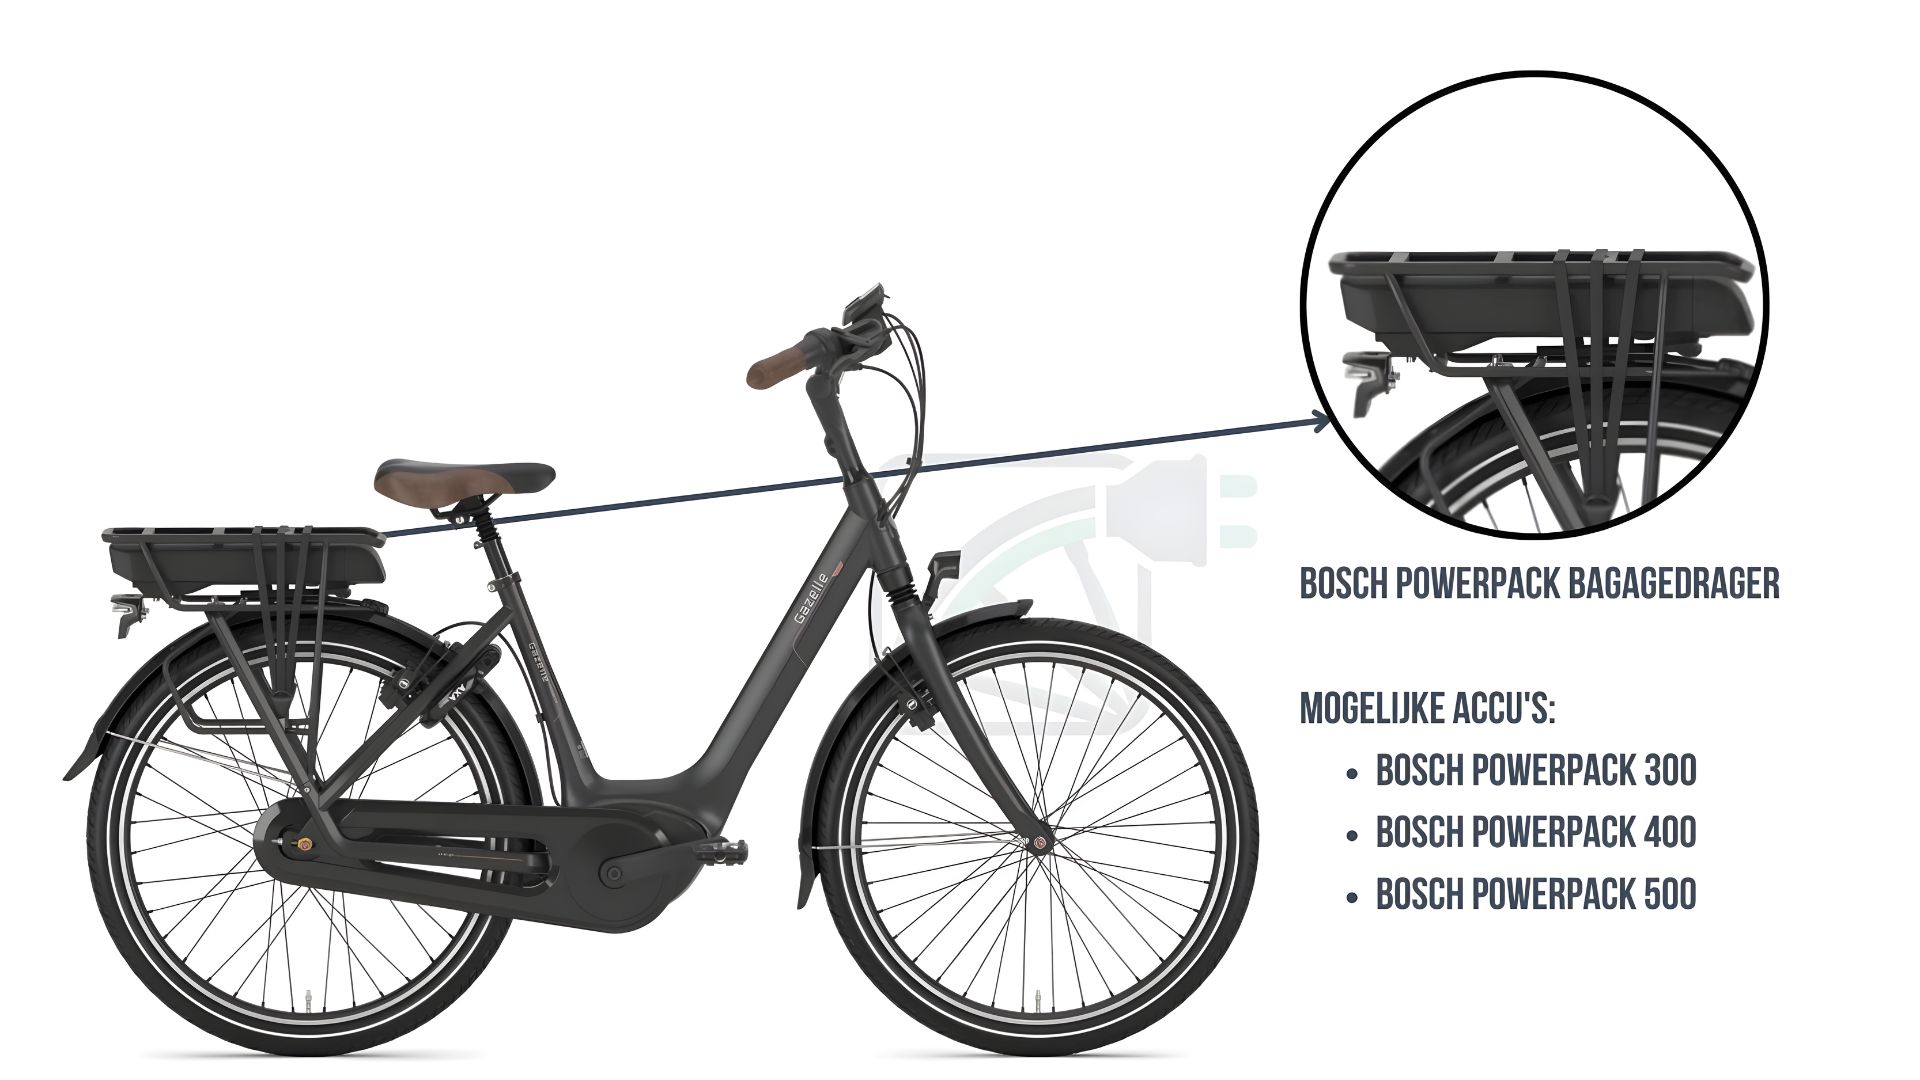 portabaterías bosch powerpack instalado en una bicicleta eléctrica. en la imagen se destaca la batería y se describe qué baterías encajan en este tipo de bicicletas.